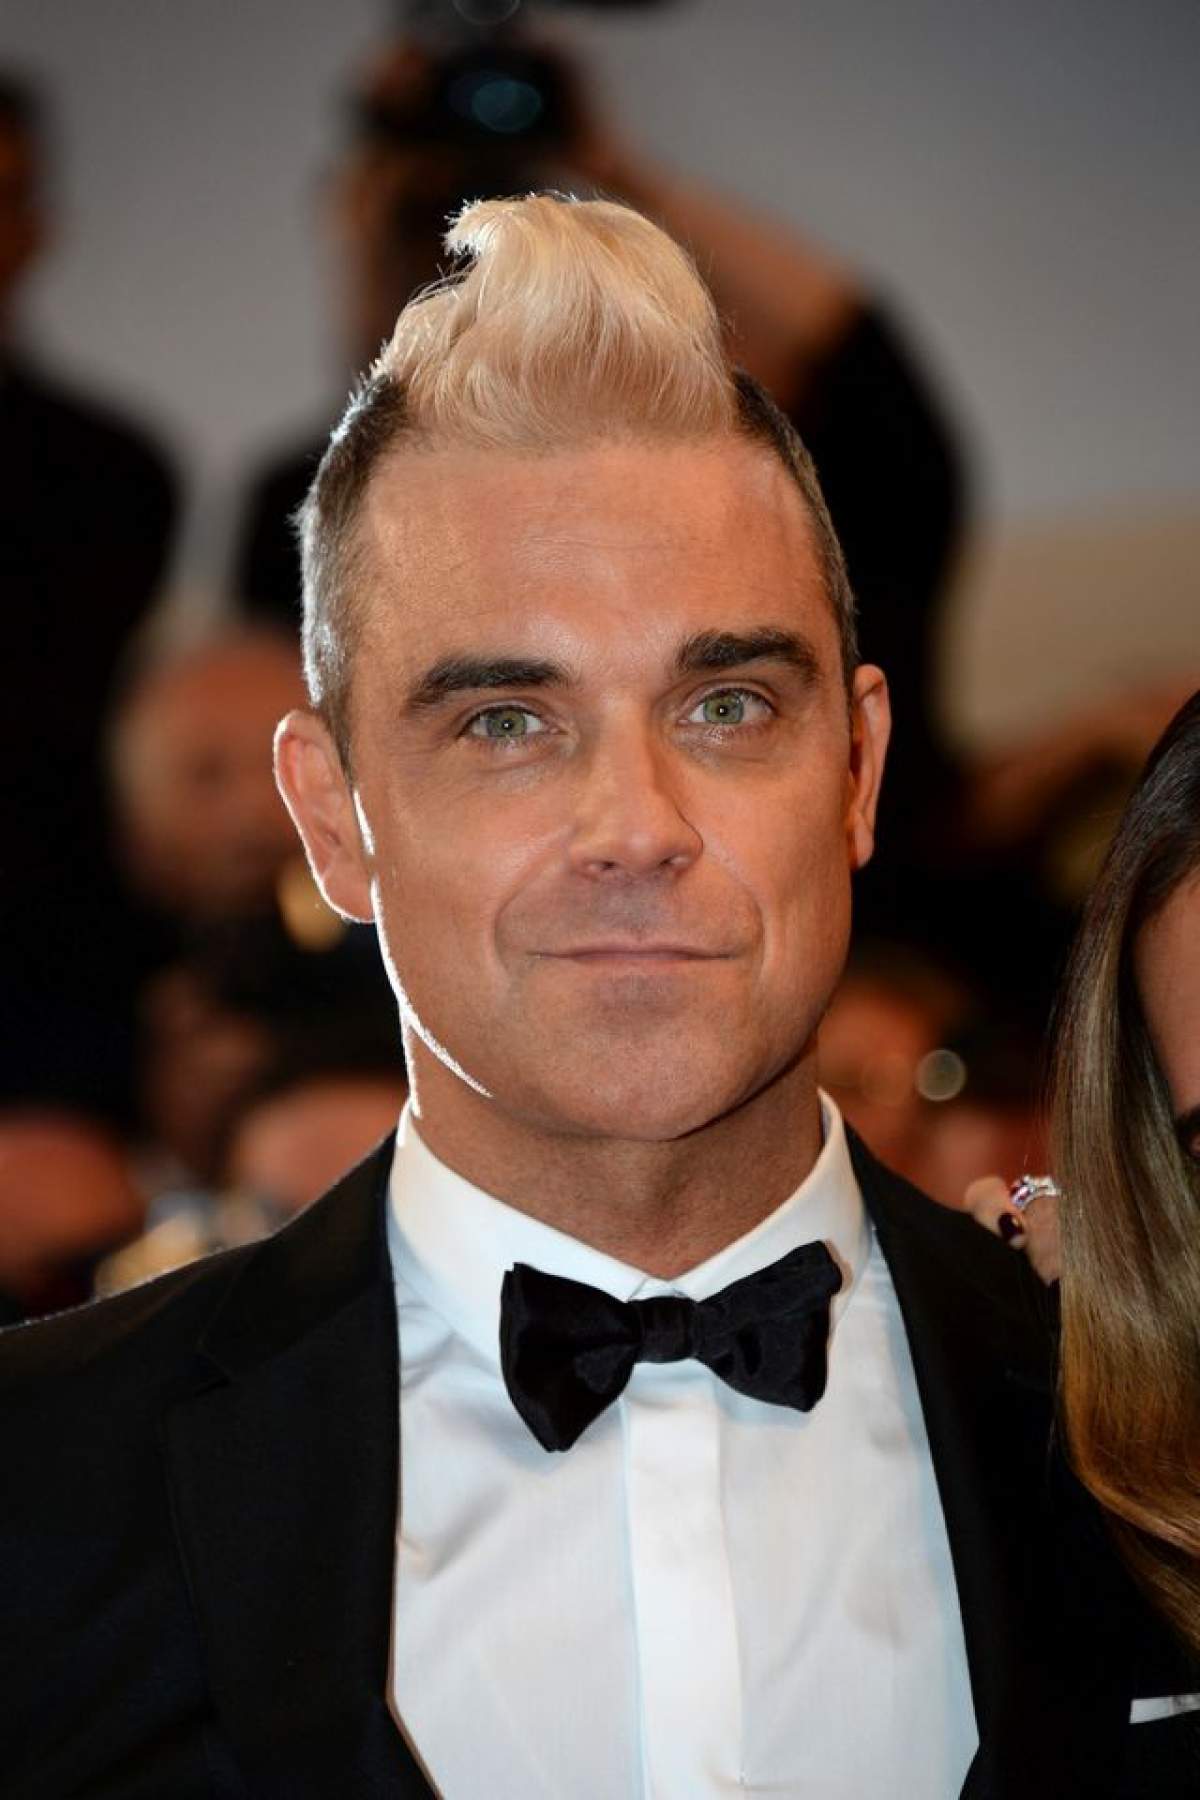 Mesajul lui Robbie Williams despre Bucureşti! Ce părere are artistul despre români